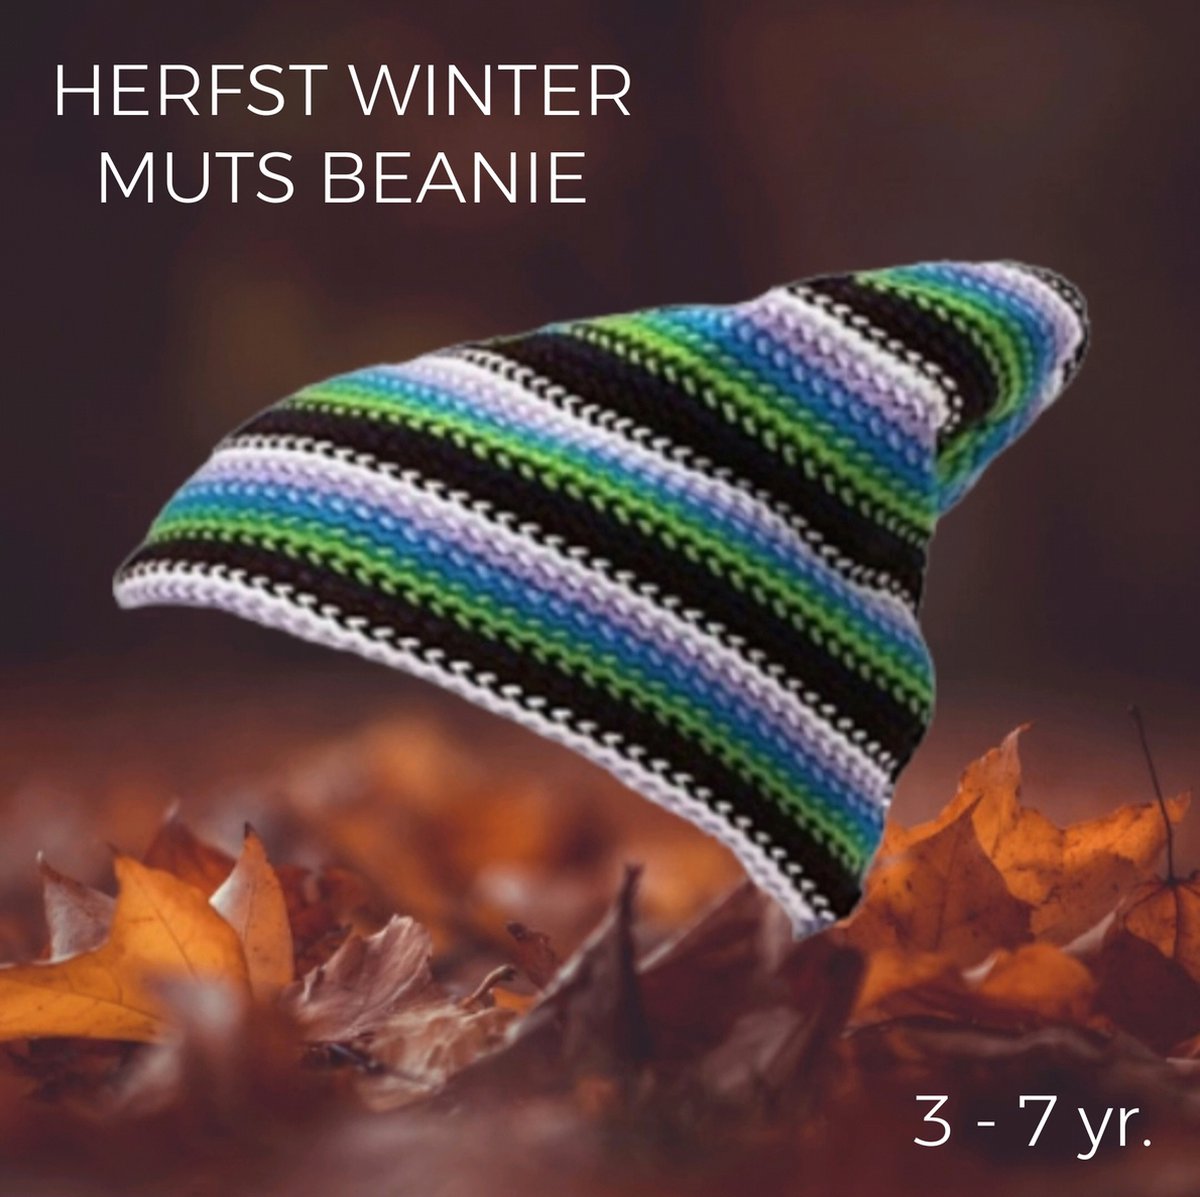 Going Retro - Gebreide Muts / Beanie - Herfst Winter - Strepen - Kids / Kleuters / Dreumes / Ukkies - Vrolijke kleuren - Meerkleurig Multicolour - Kleine Kinderen - 3 tot 7yr.